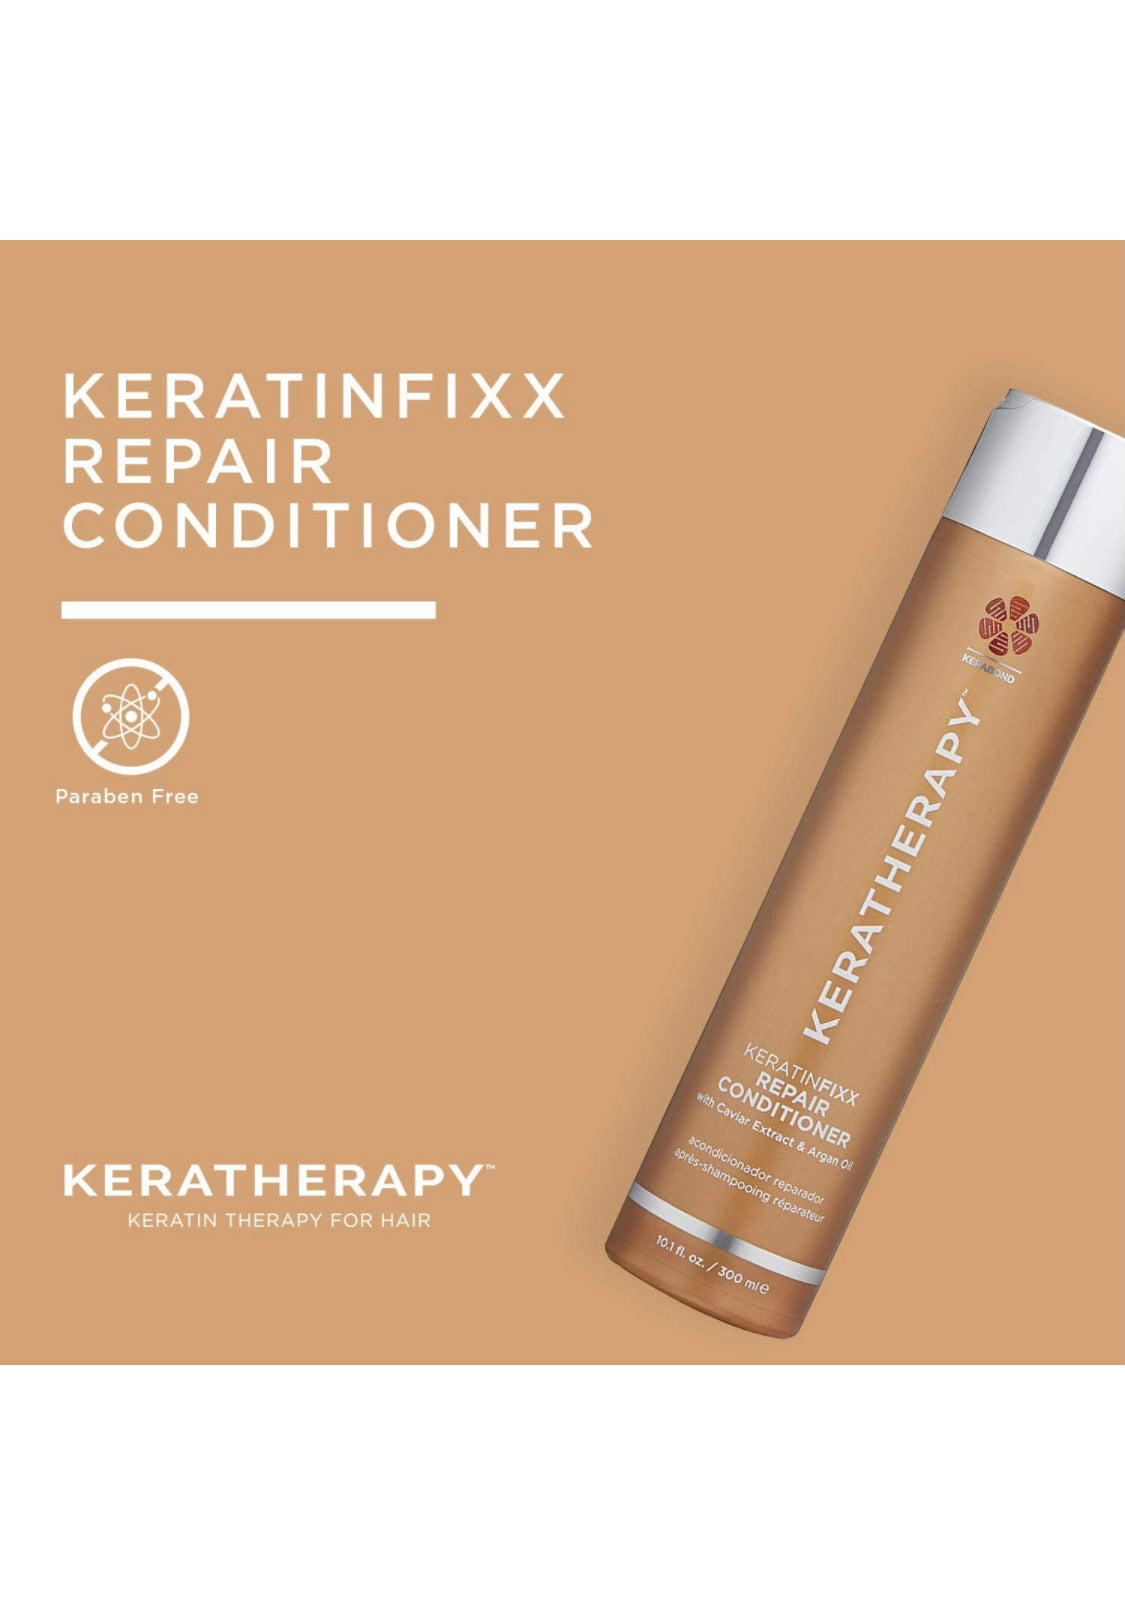 Keratherapy - Keratinfixx repair conditioner 10.1 fl. oz./ 300 ml